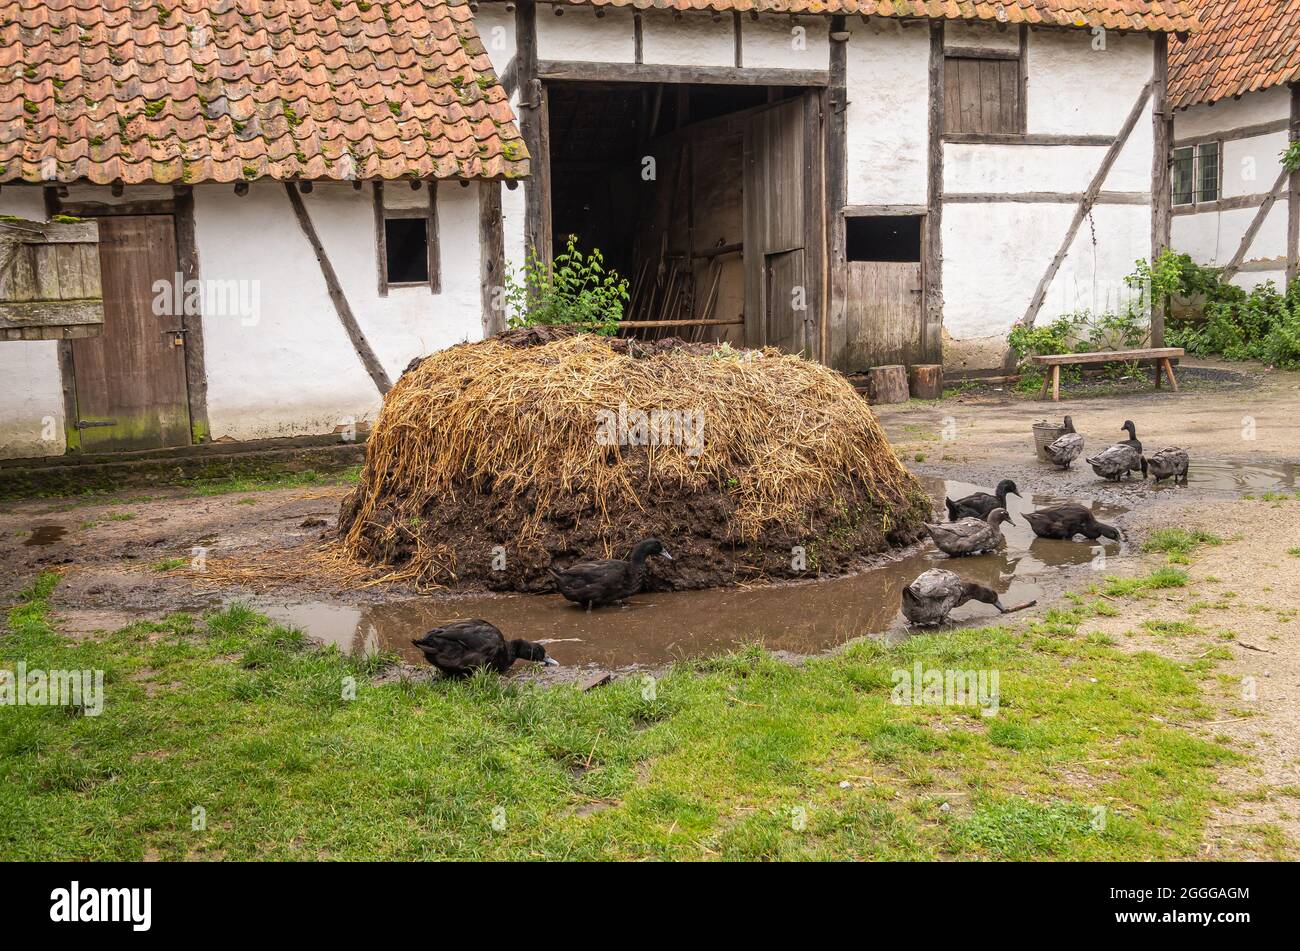 Genk, Belgique - 11 août 2021 : Domein Bokrijk. Les canards noirs travaillent de la boue et de l'eau autour d'un tas de fumier brun sur la cour de la vieille ferme. Blanc peint wa Banque D'Images